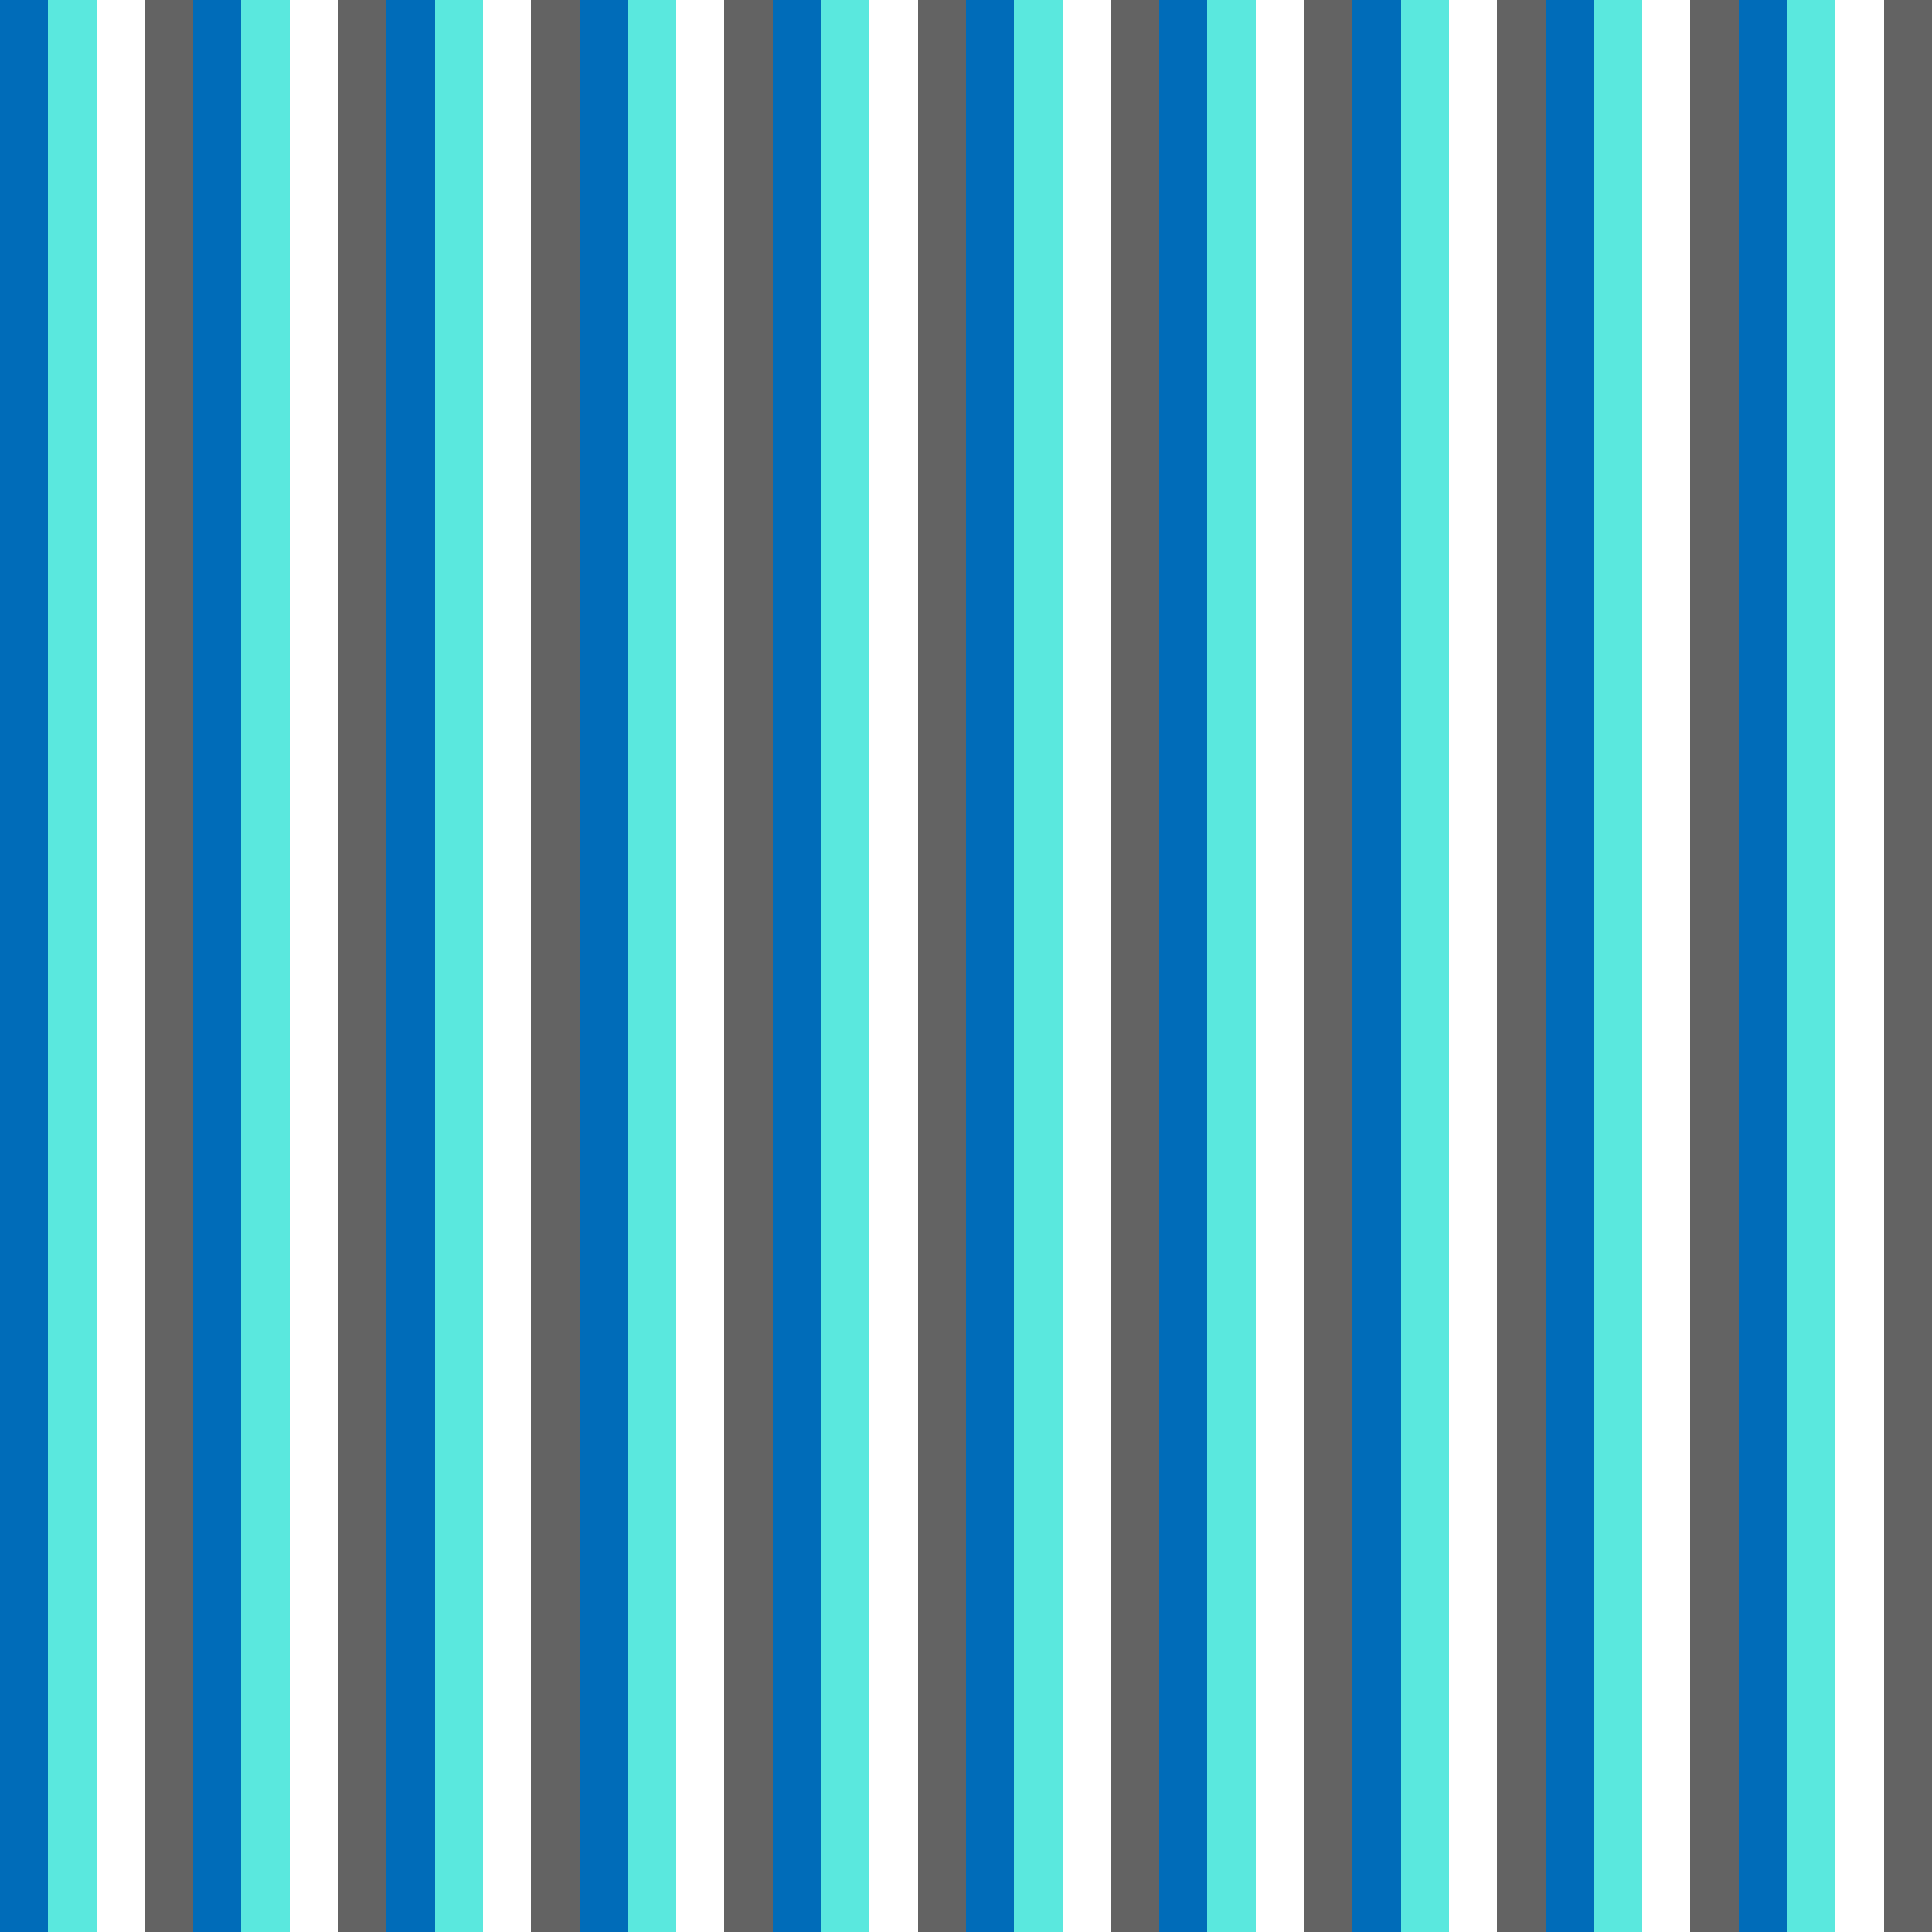 Faixas finas repetidas na vertical nas cores azul, azul clara, branca e cinza.